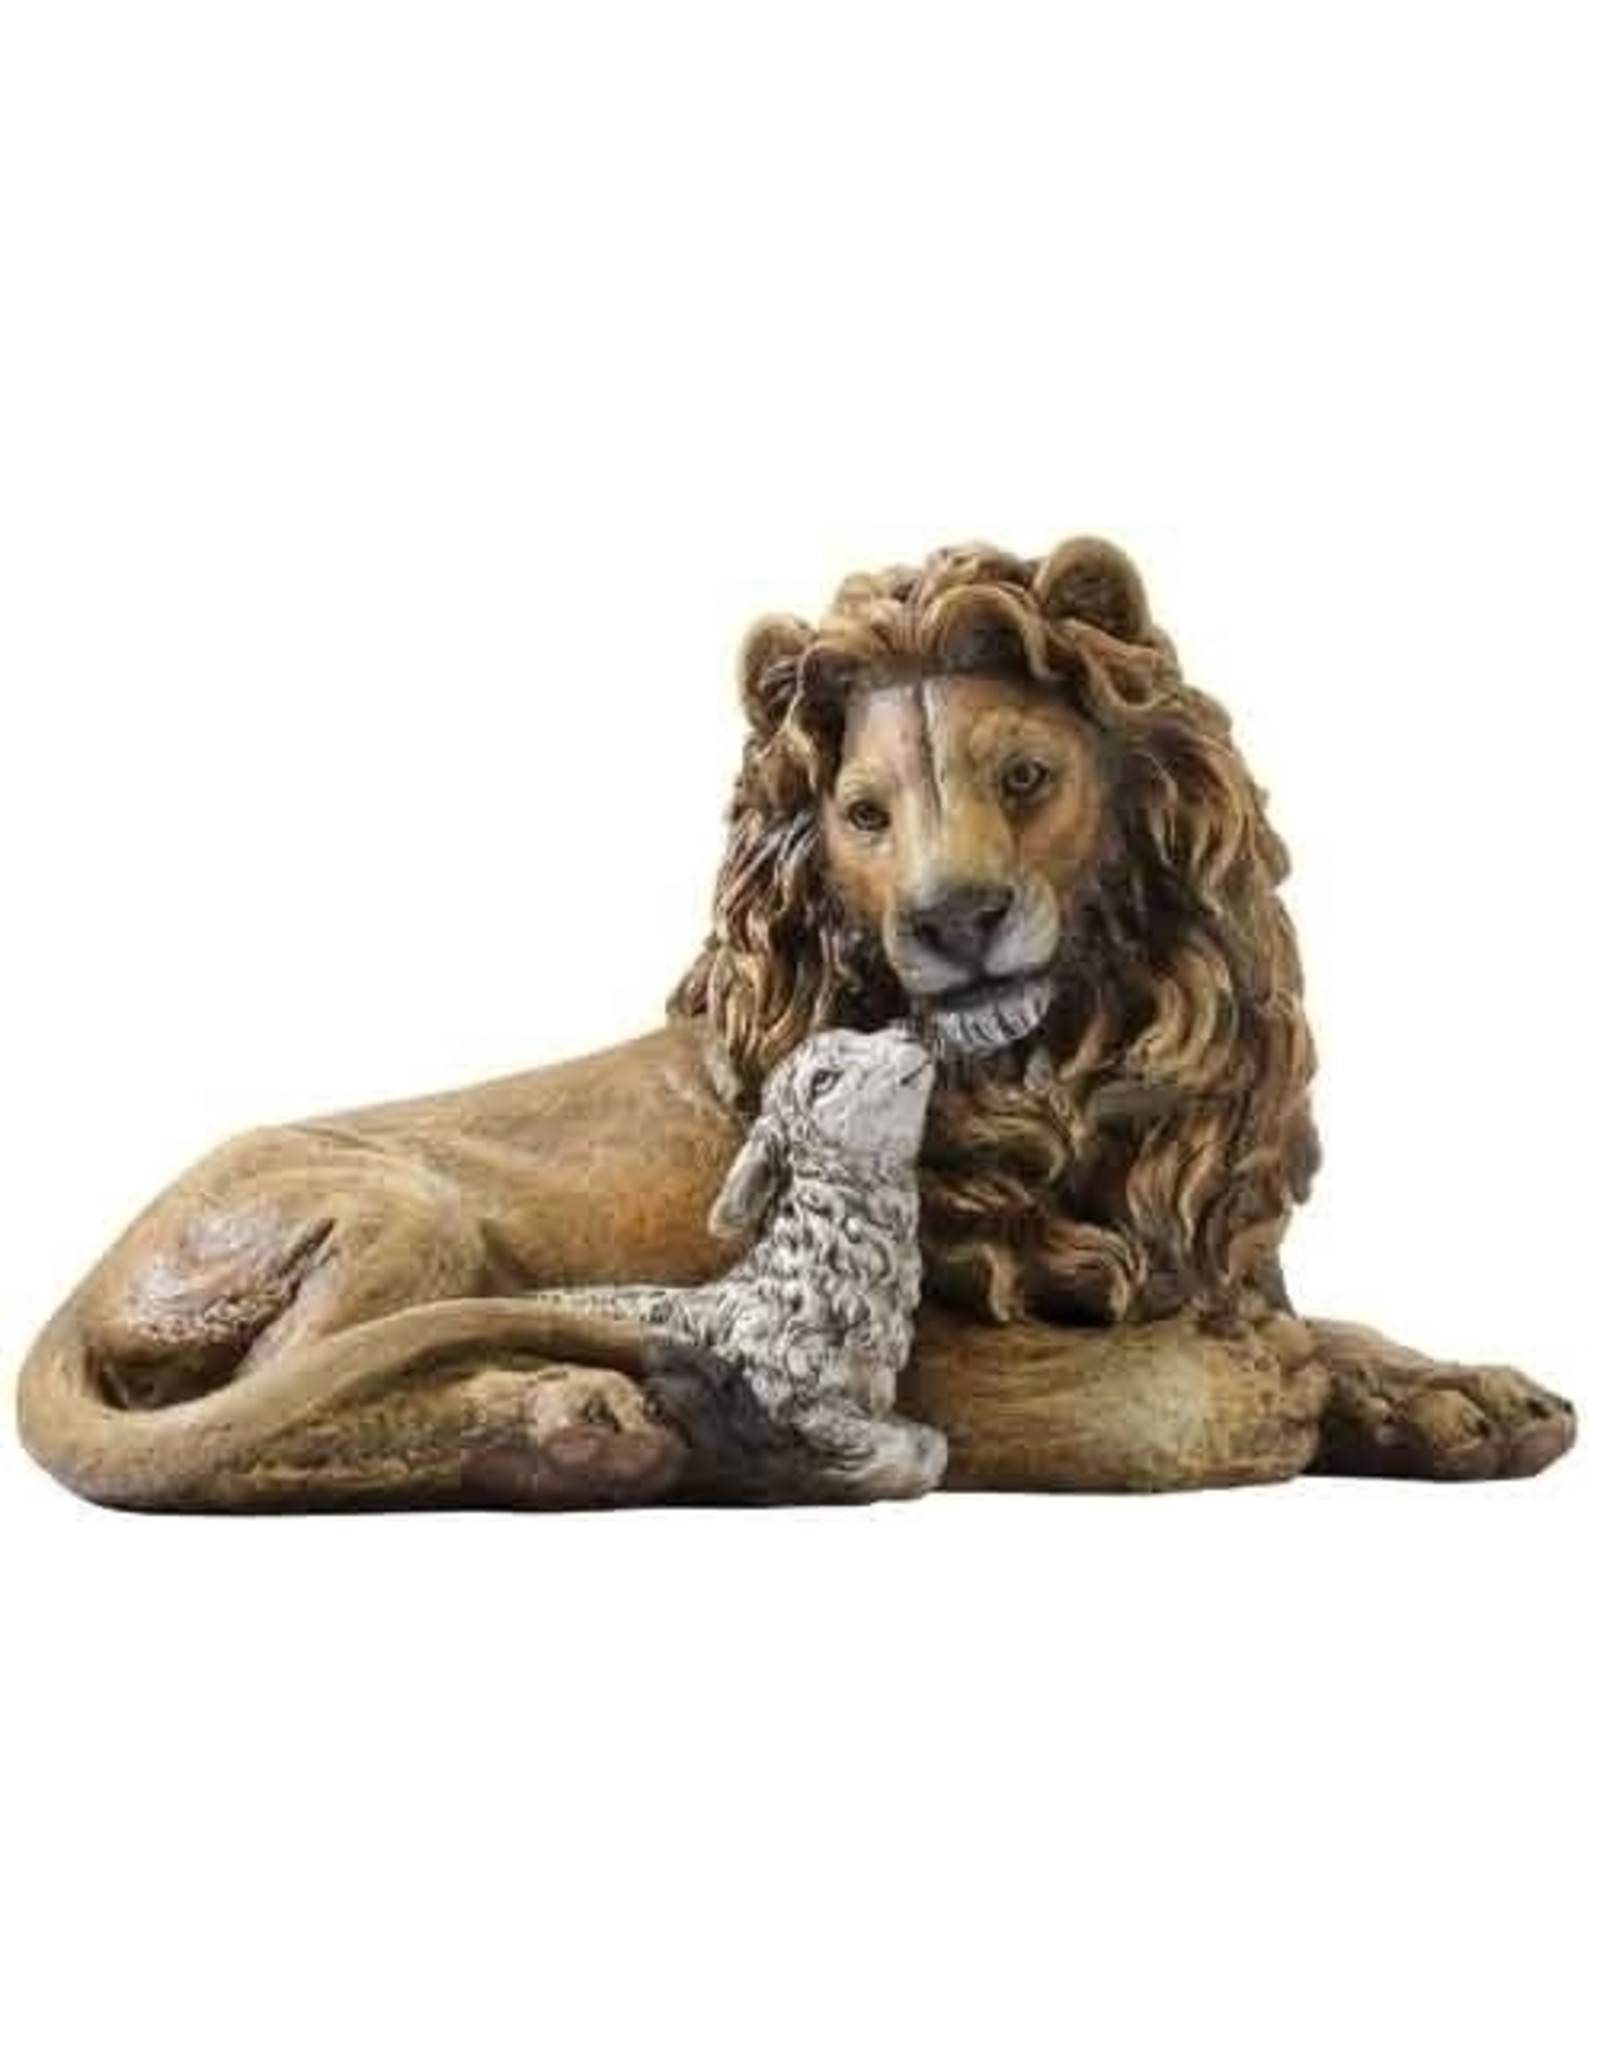 Statue Lion & Lamb 6.5"